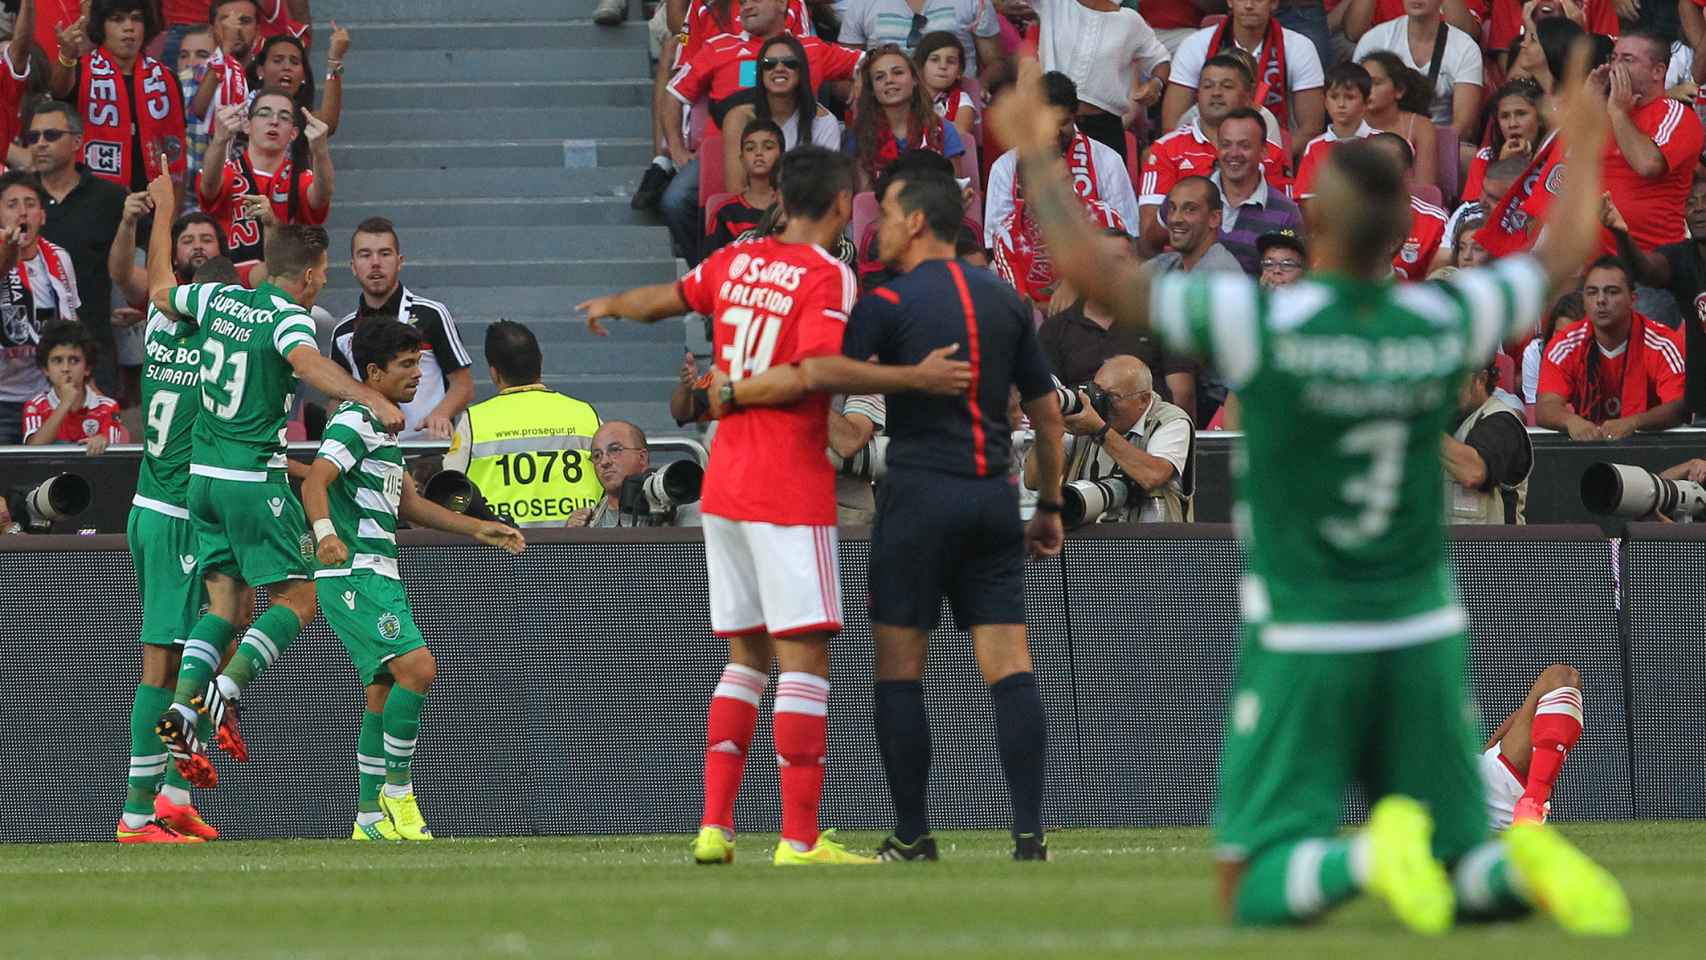 El Sporting celebra un gol ante el Benfica en el derbi lisboeta.